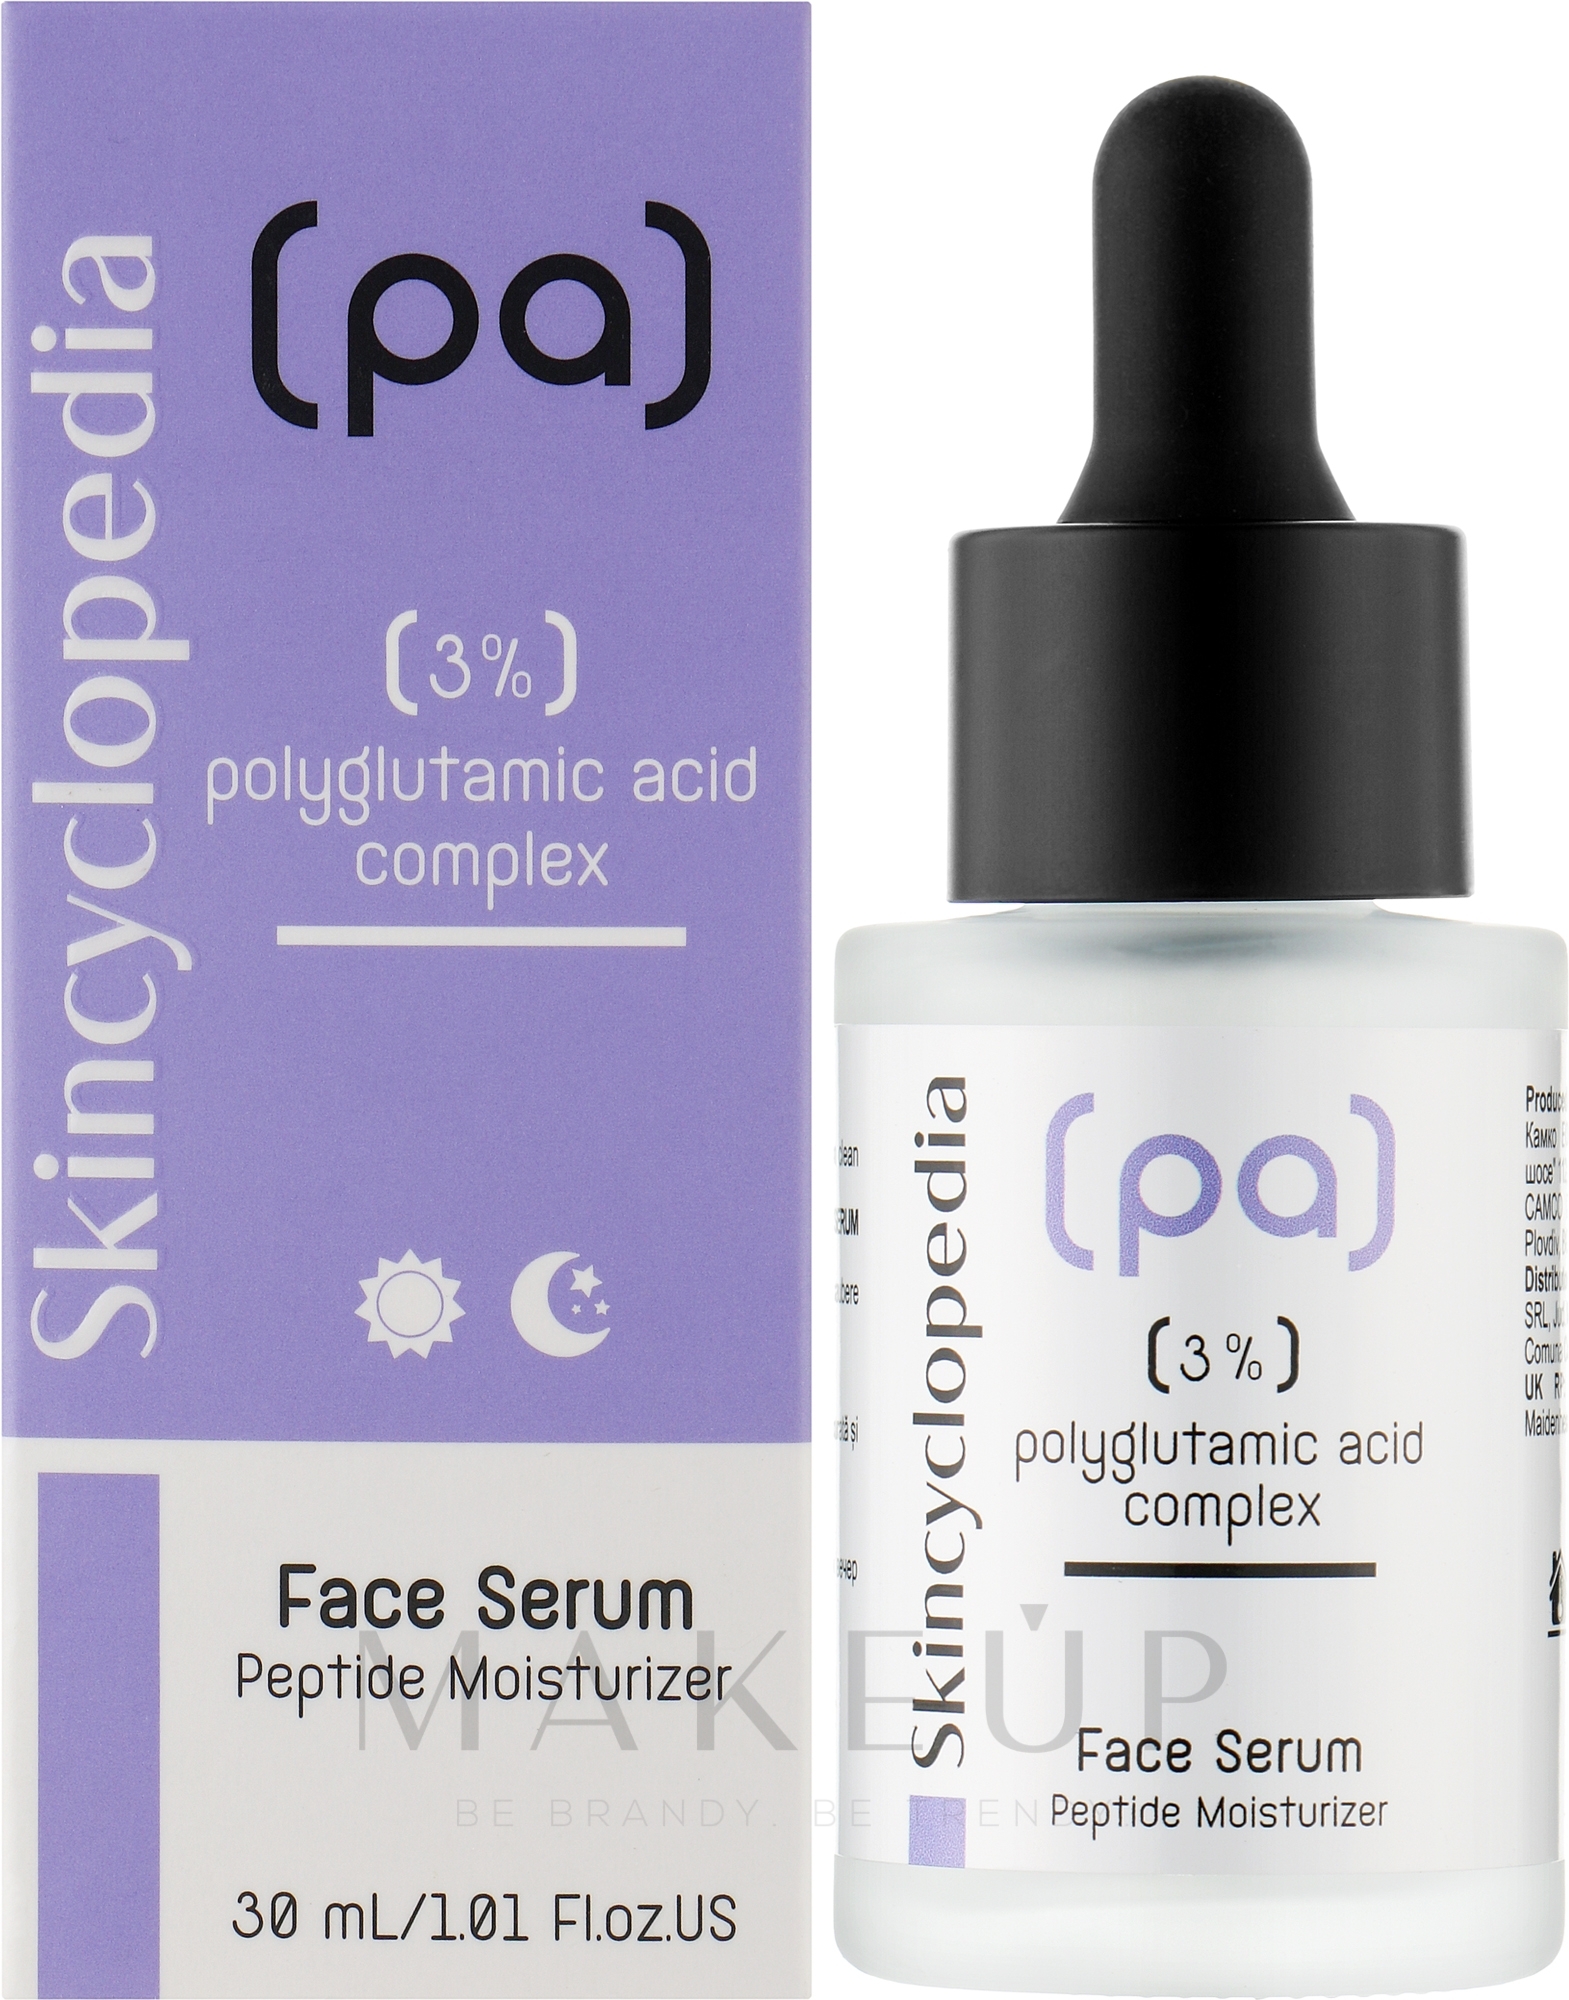 Feuchtigkeitsspendendes Gesichtsserum mit Polyglutaminsäure - Skincyclopedia Concentrated Face Serum With 3% Polyglutamic Acid Complex — Bild 30 ml